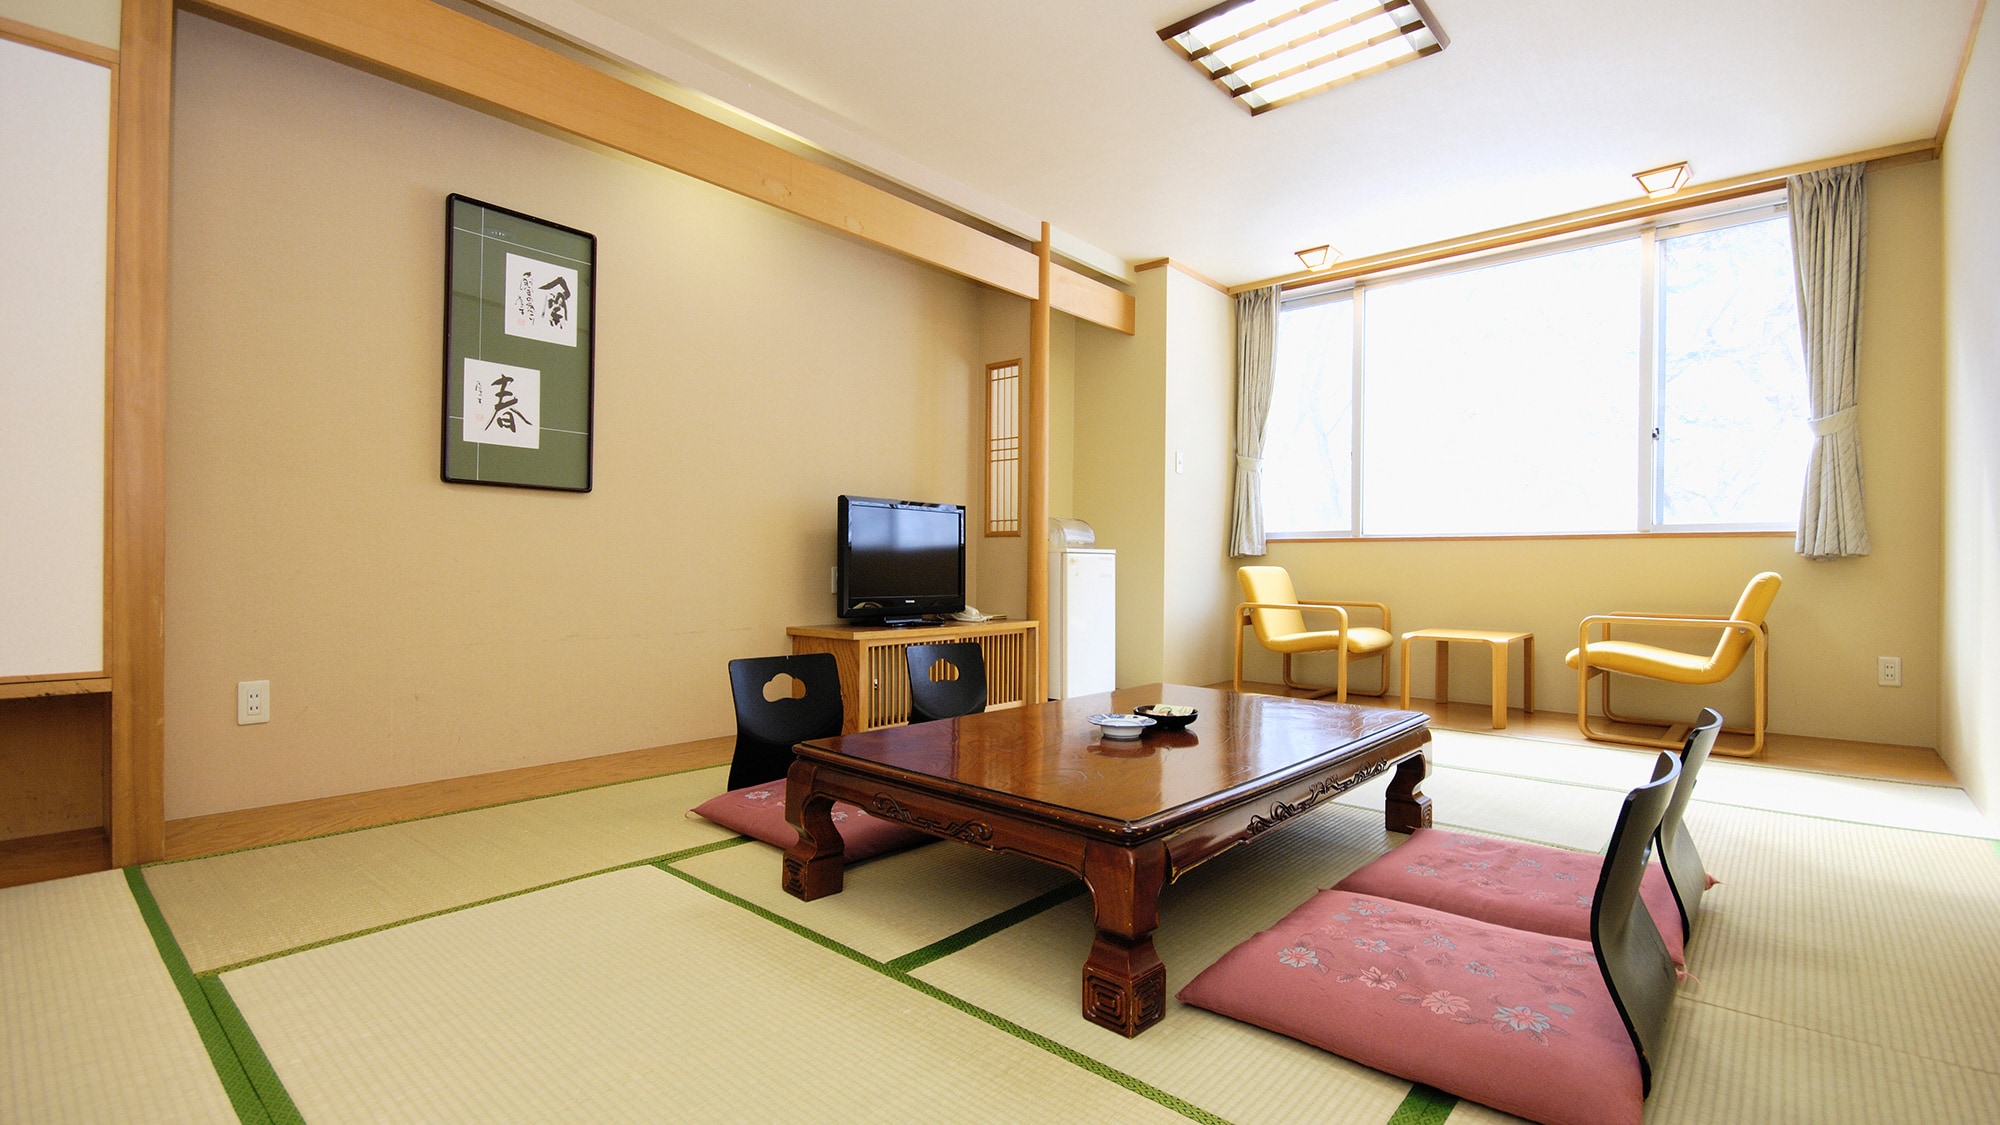 [日式房間] 這是標準的日式房間。伸展雙腿並放鬆